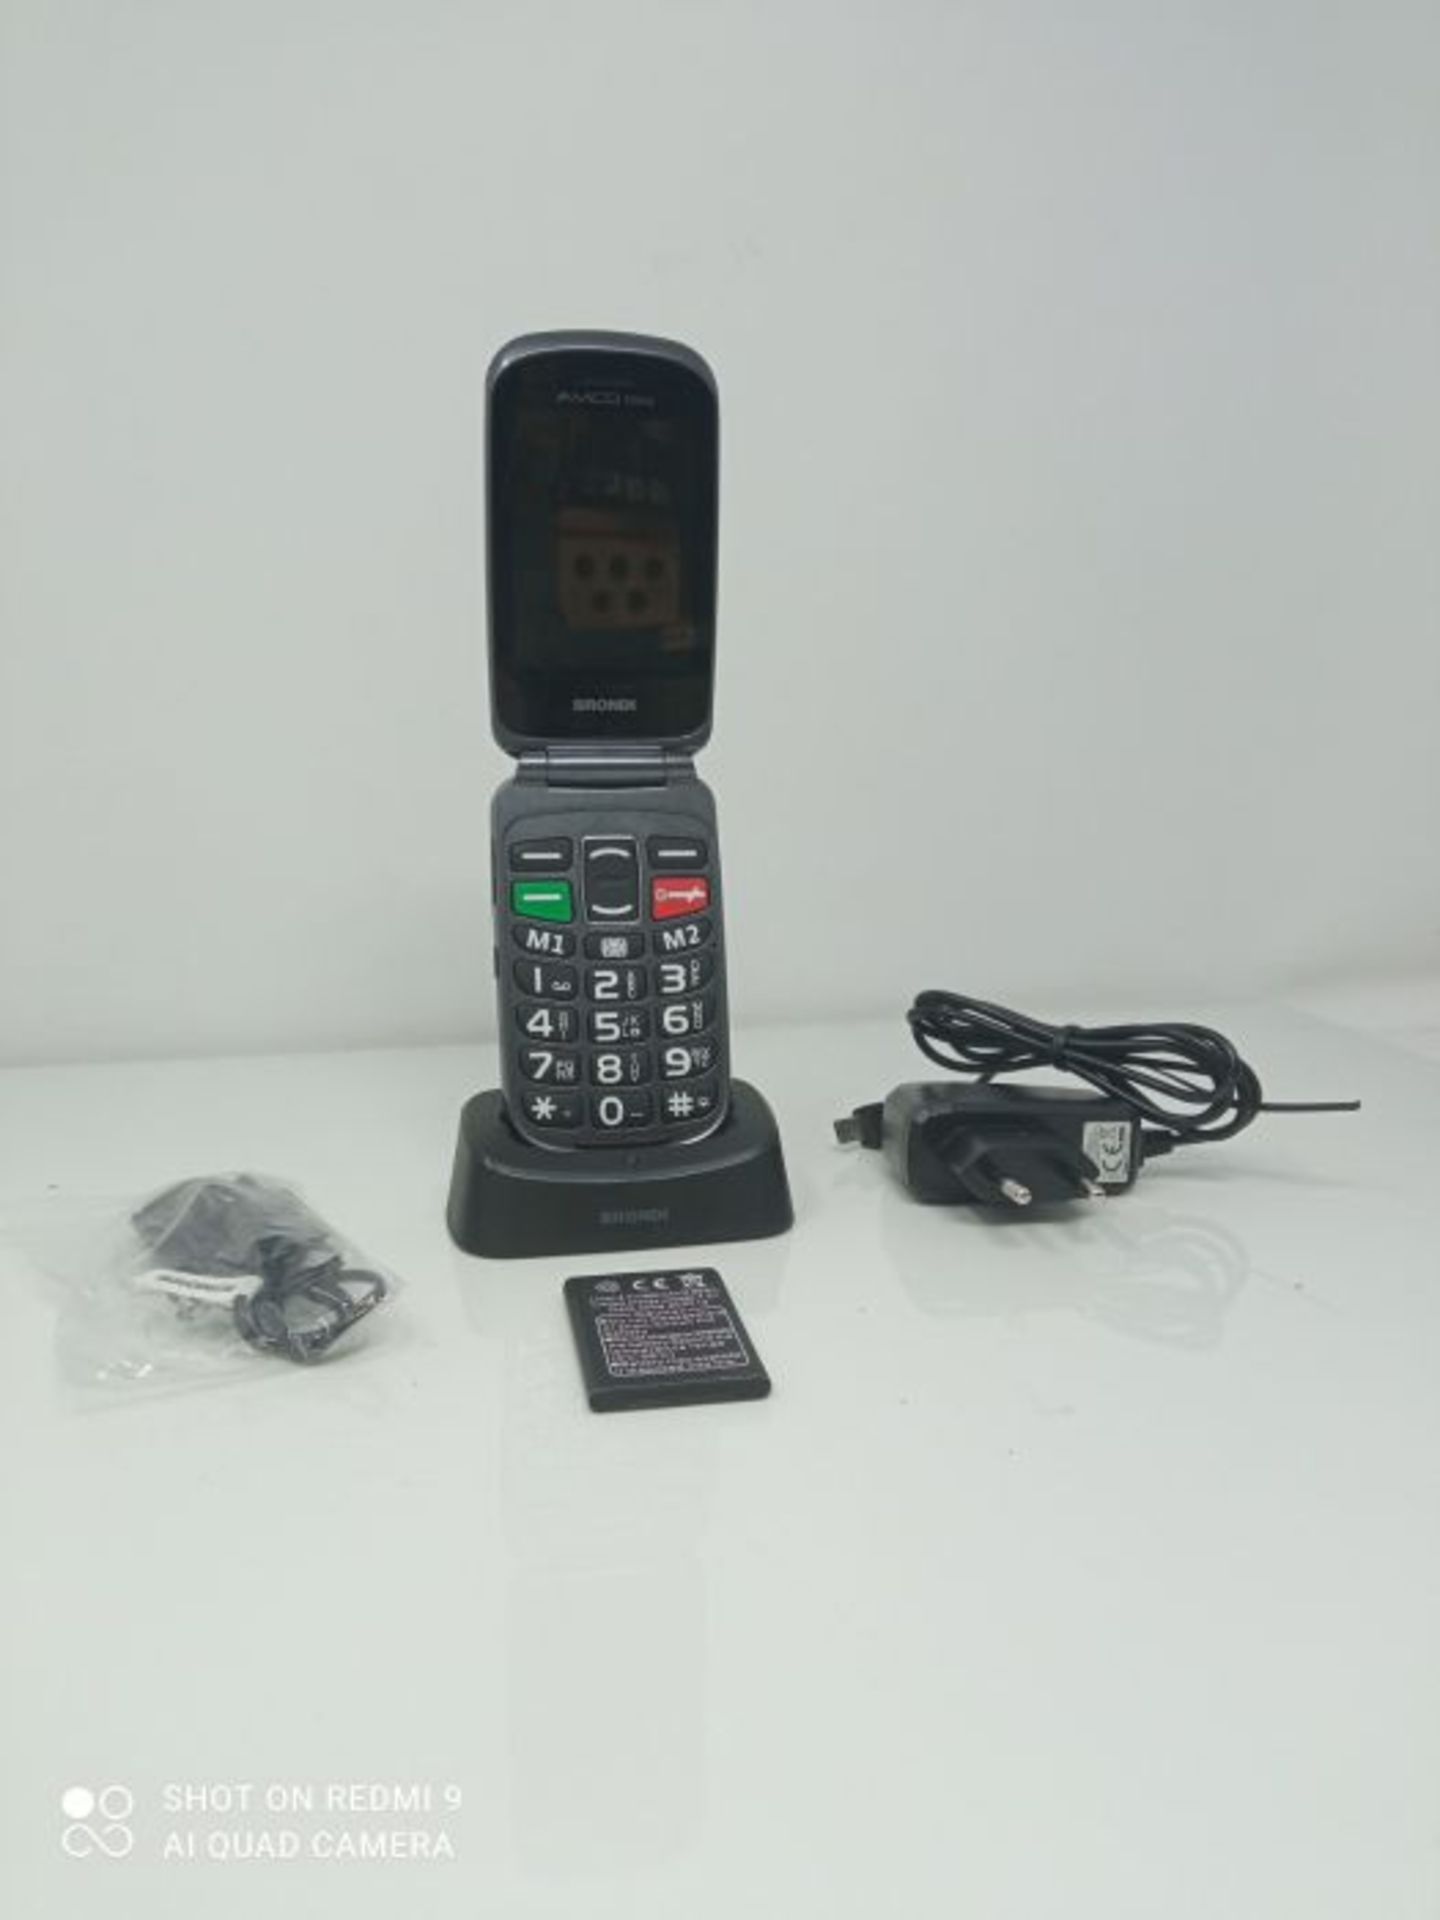 RRP £66.00 Brondi Amico Fedele, Telefono cellulare GSM per anziani con tasti grandi, tasto SOS e - Image 2 of 2